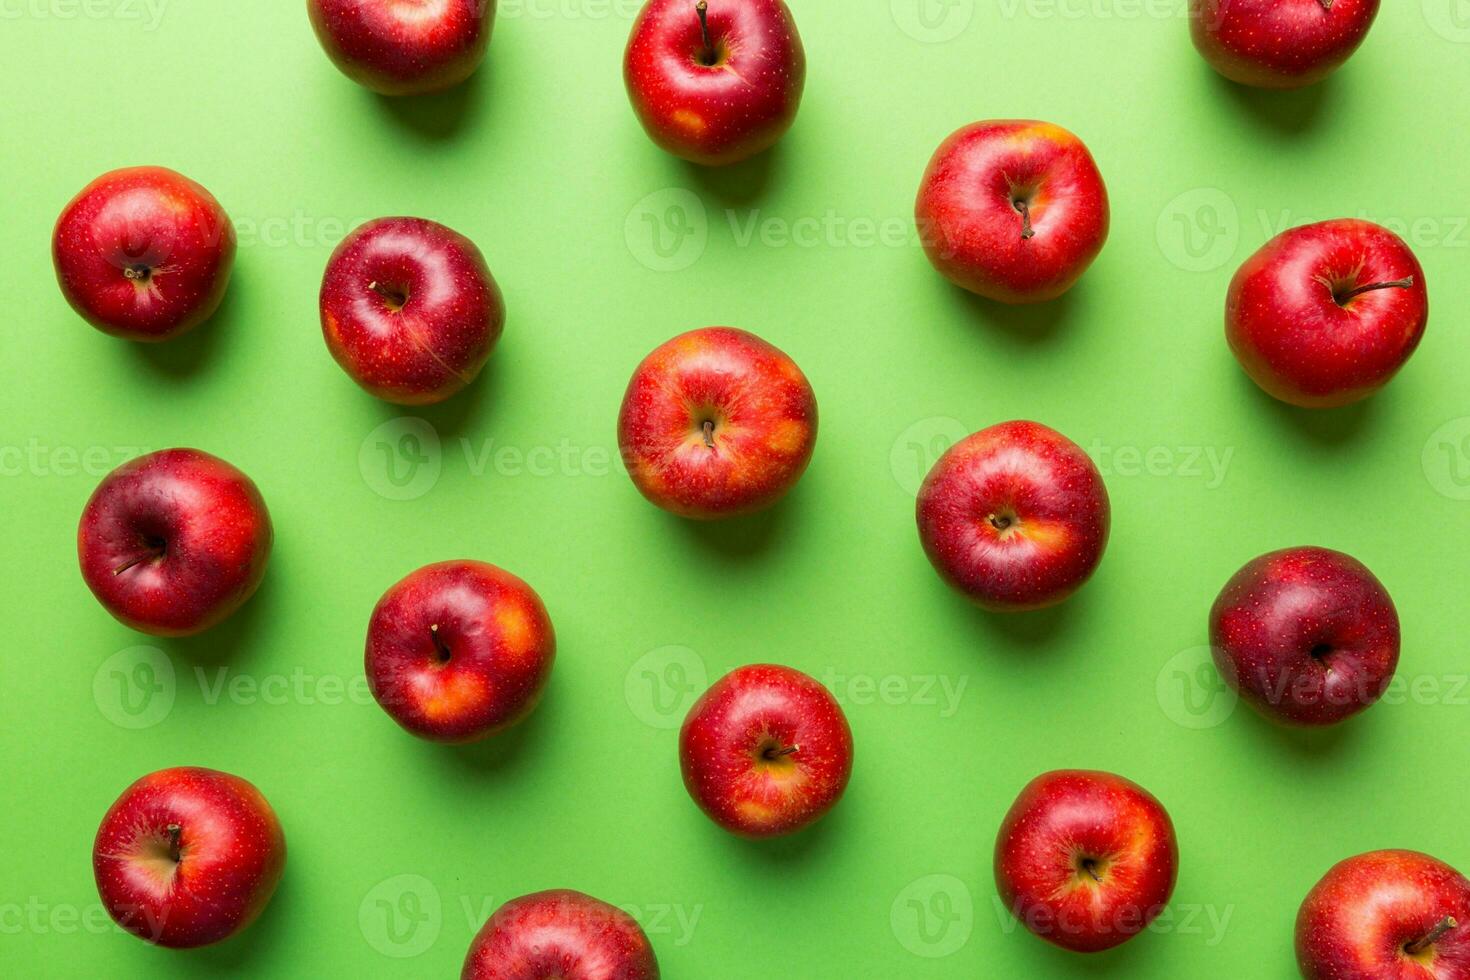 viele rot Äpfel auf farbig Hintergrund, oben Sicht. Herbst Muster mit frisch Apfel über Aussicht foto